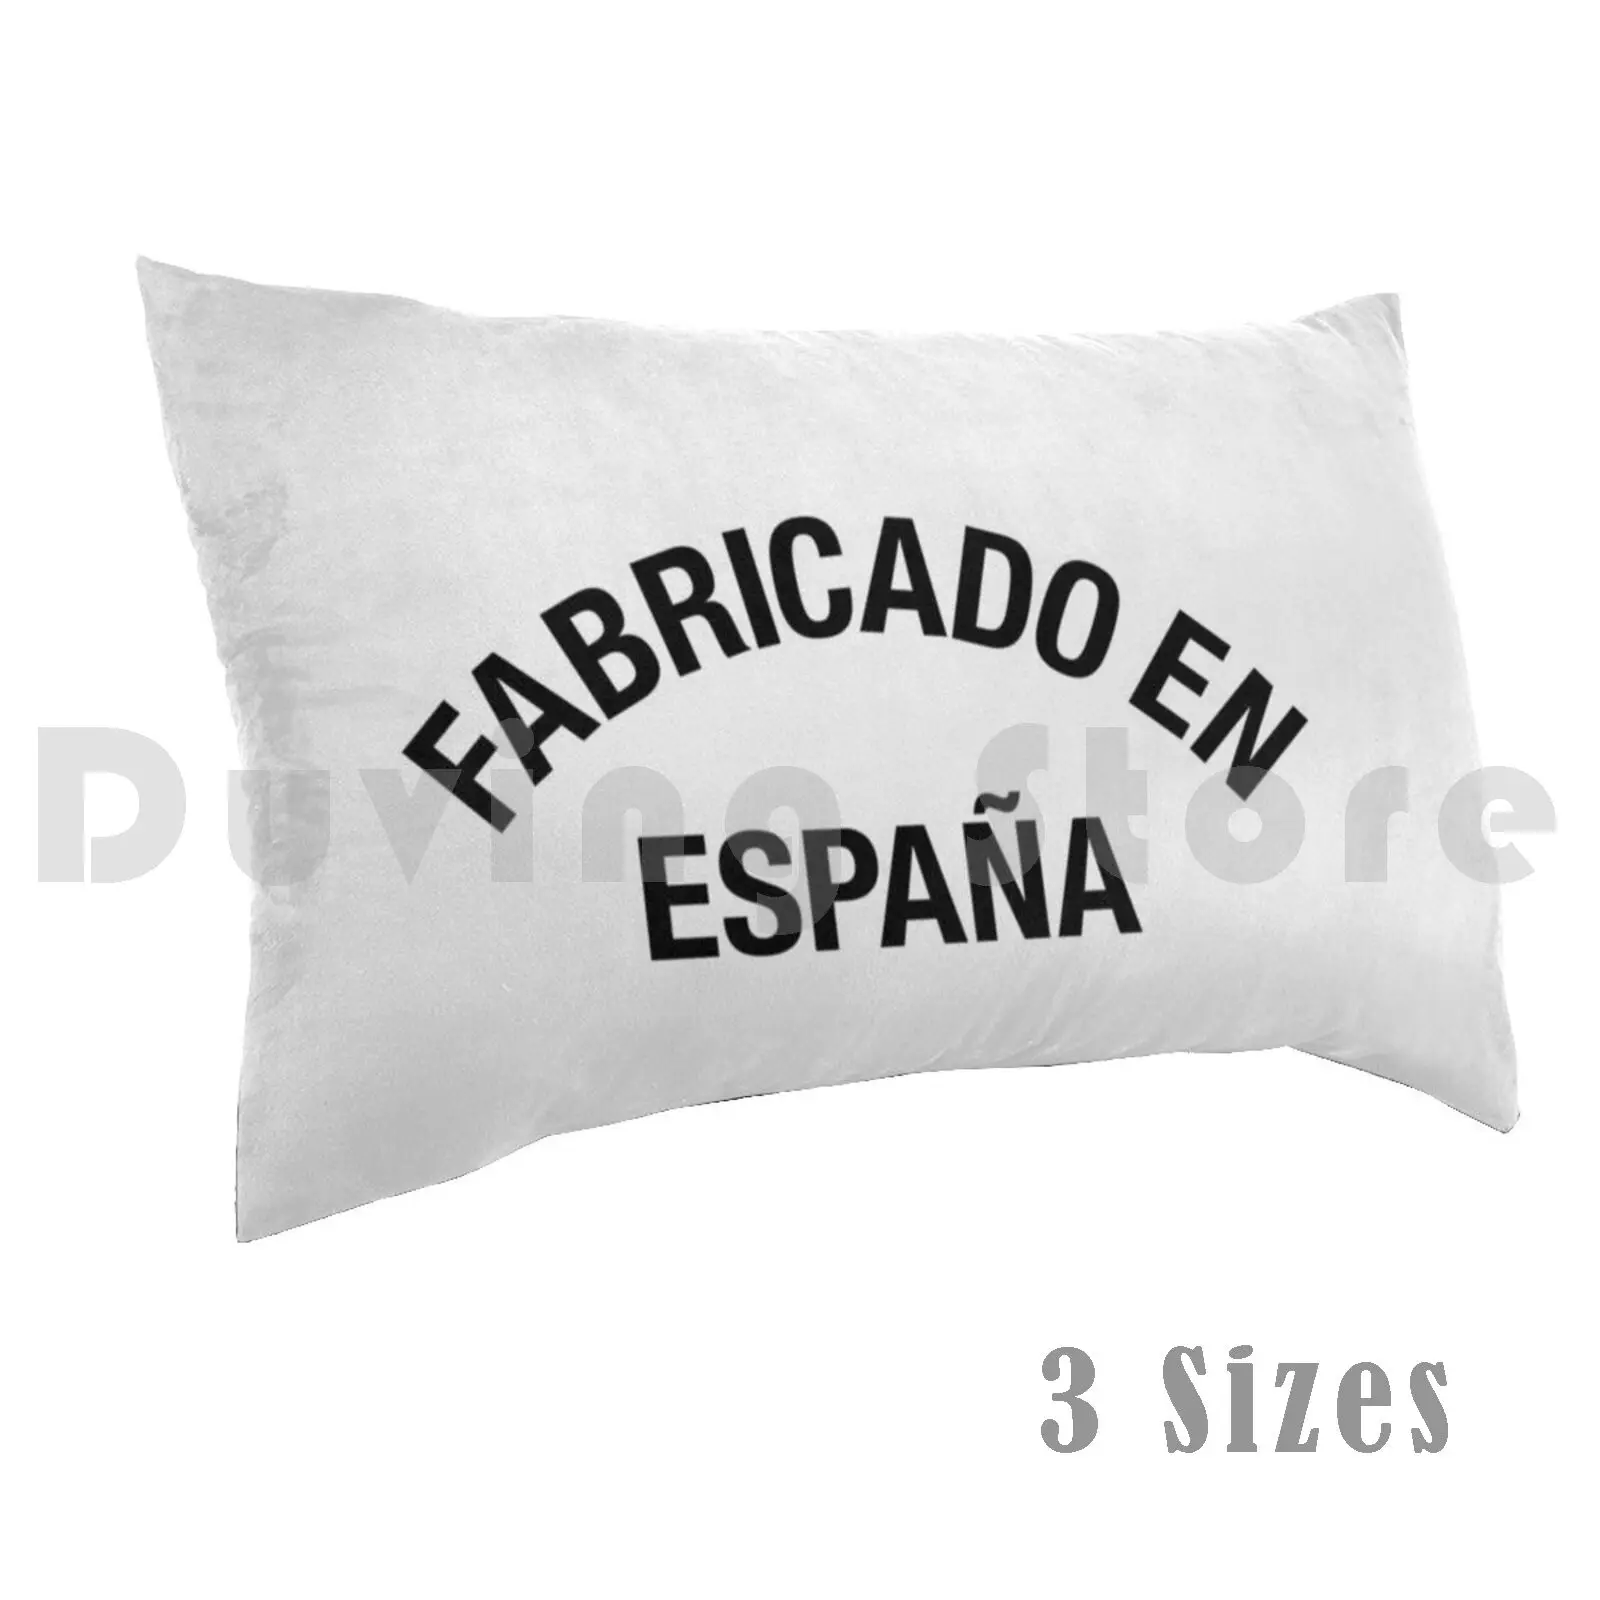 Произведено в Испания Калъфка С Принтом 35x50 Произведено В Испания испански Испански Hola Espana Роден В Испания Fabricado bg